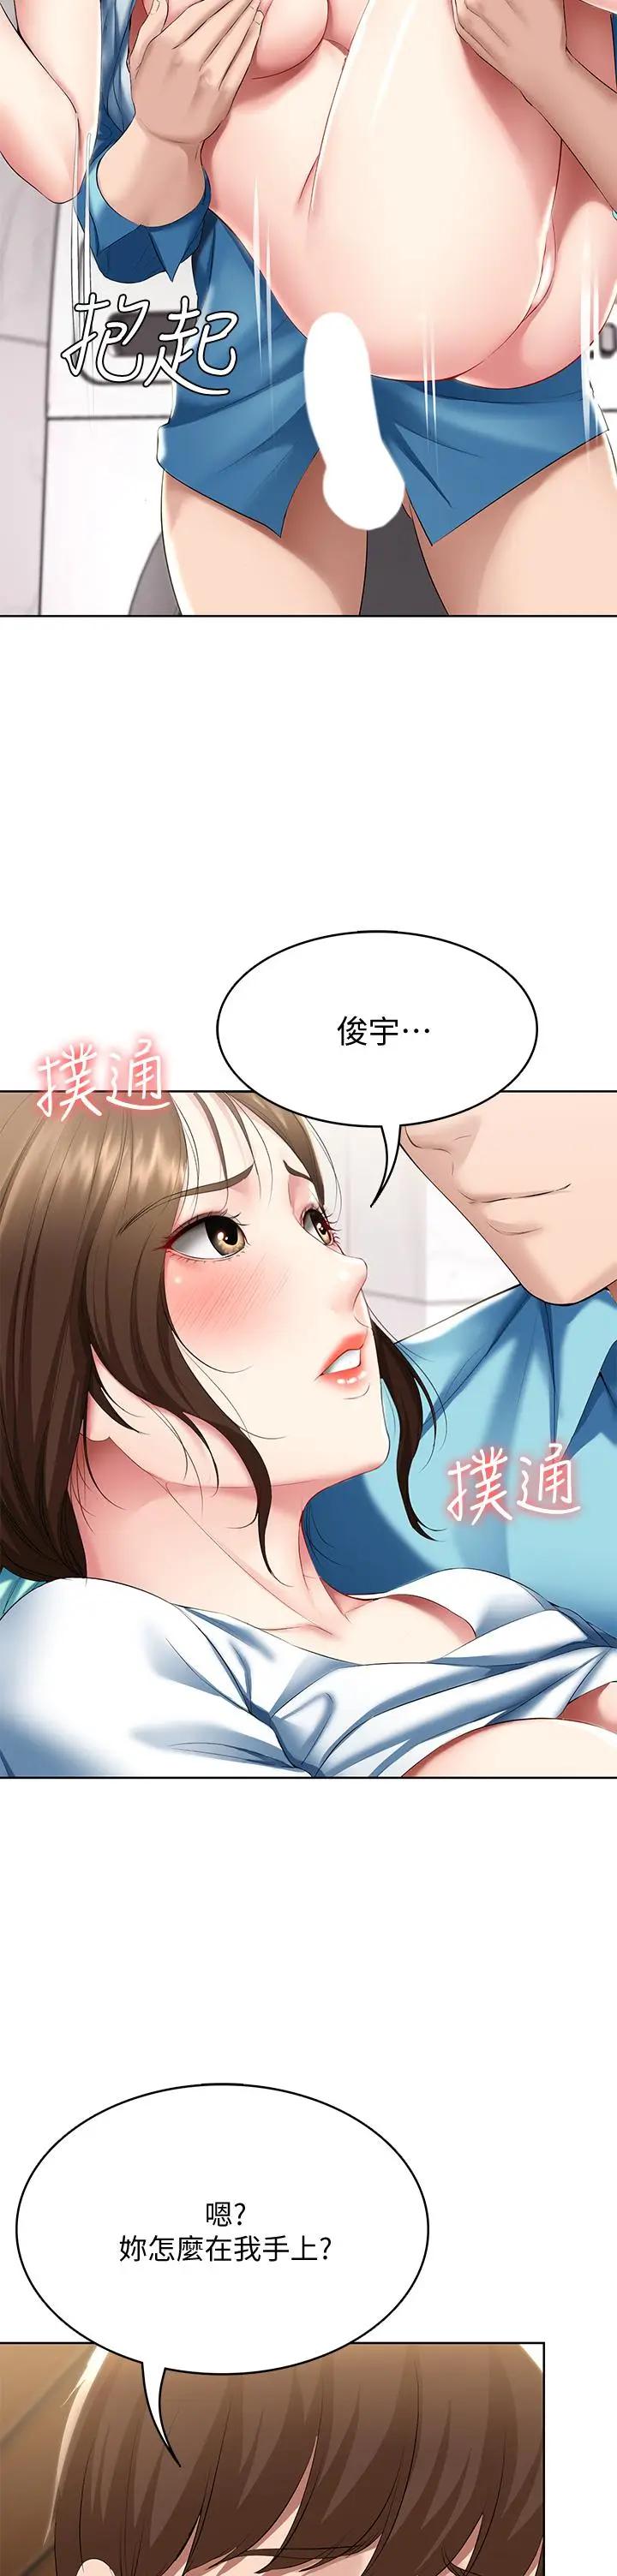 韩国污漫画 寄宿日記 第56话妖艳美静的特别服务 5